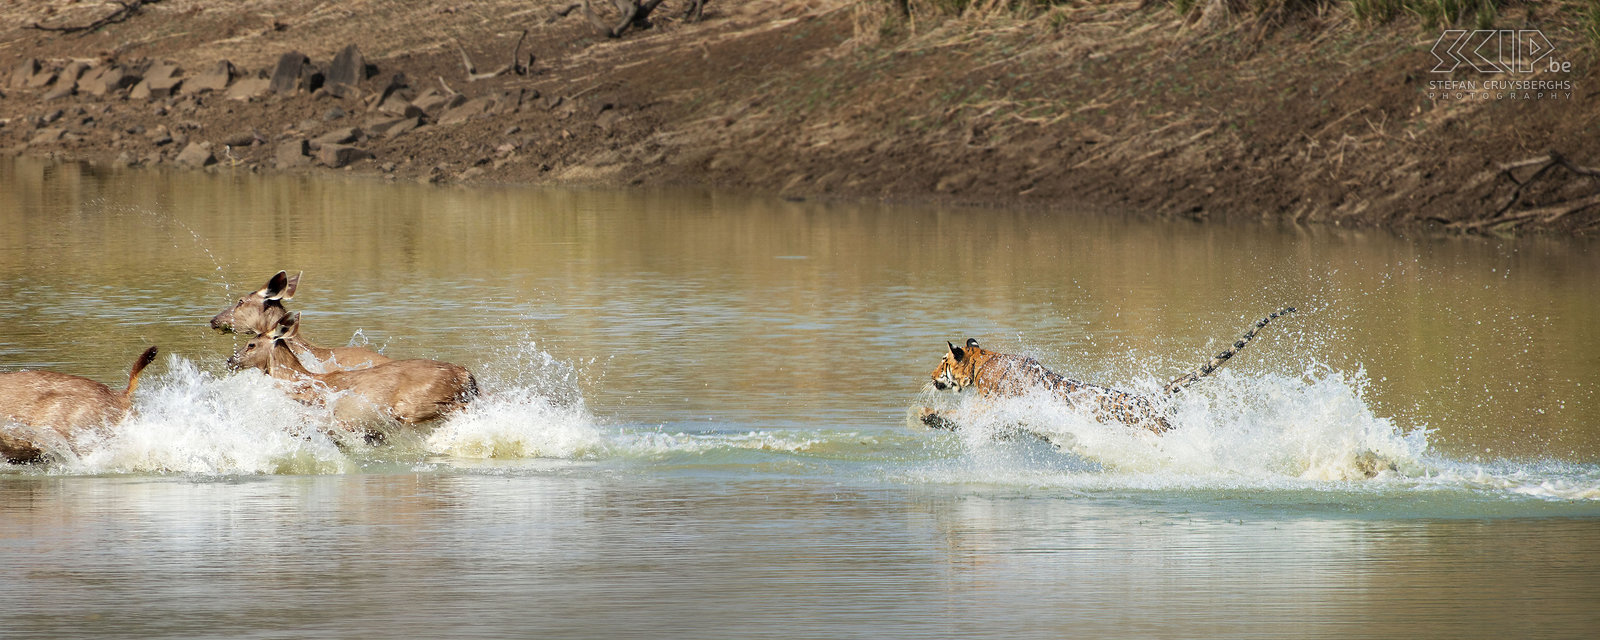 Tadoba - Tijger aanval Waarschijnlijk waren de herten snel gewaarschuwd door het opspattende water en konden ze naar de oever spurten. De 3 herten ontsnapten maar ik had een aantal prachtige actiefoto's. Het was een ontzettend spannend moment en we mogen ons ongelooflijk gelukkig prijzen om een jagende Bengaalse tijger gezien te hebben.  Stefan Cruysberghs